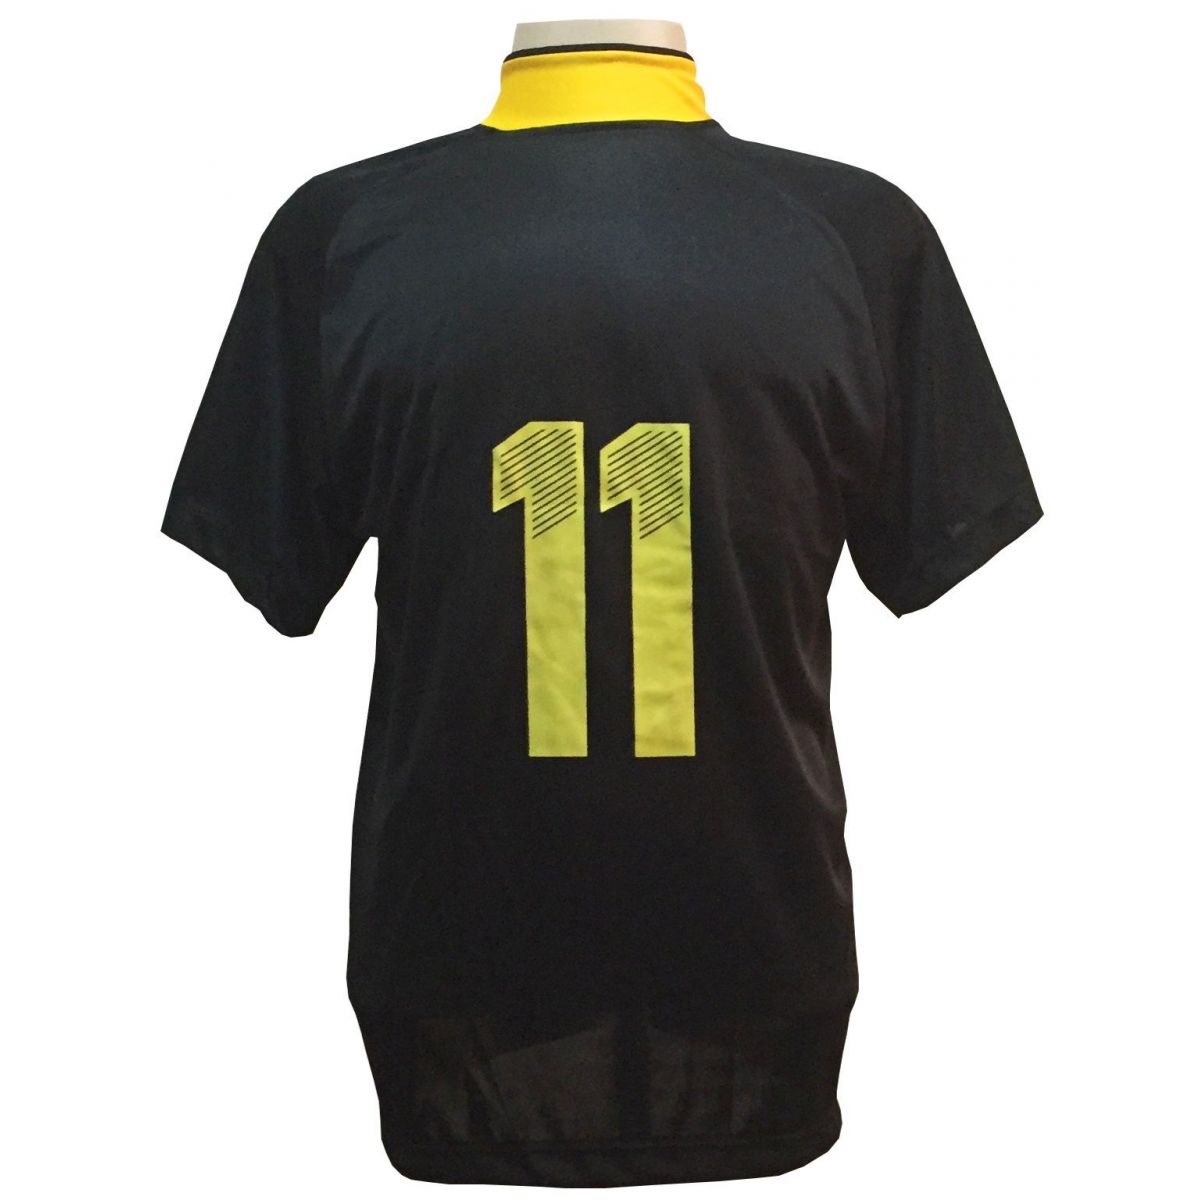 Fardamento Completo modelo Milan 20+1 (20 camisas Preto/Amarelo + 20 calções modelo Madrid Amarelo+ 20 pares de meiões Preto + 1 conjunto de goleiro) + Brindes